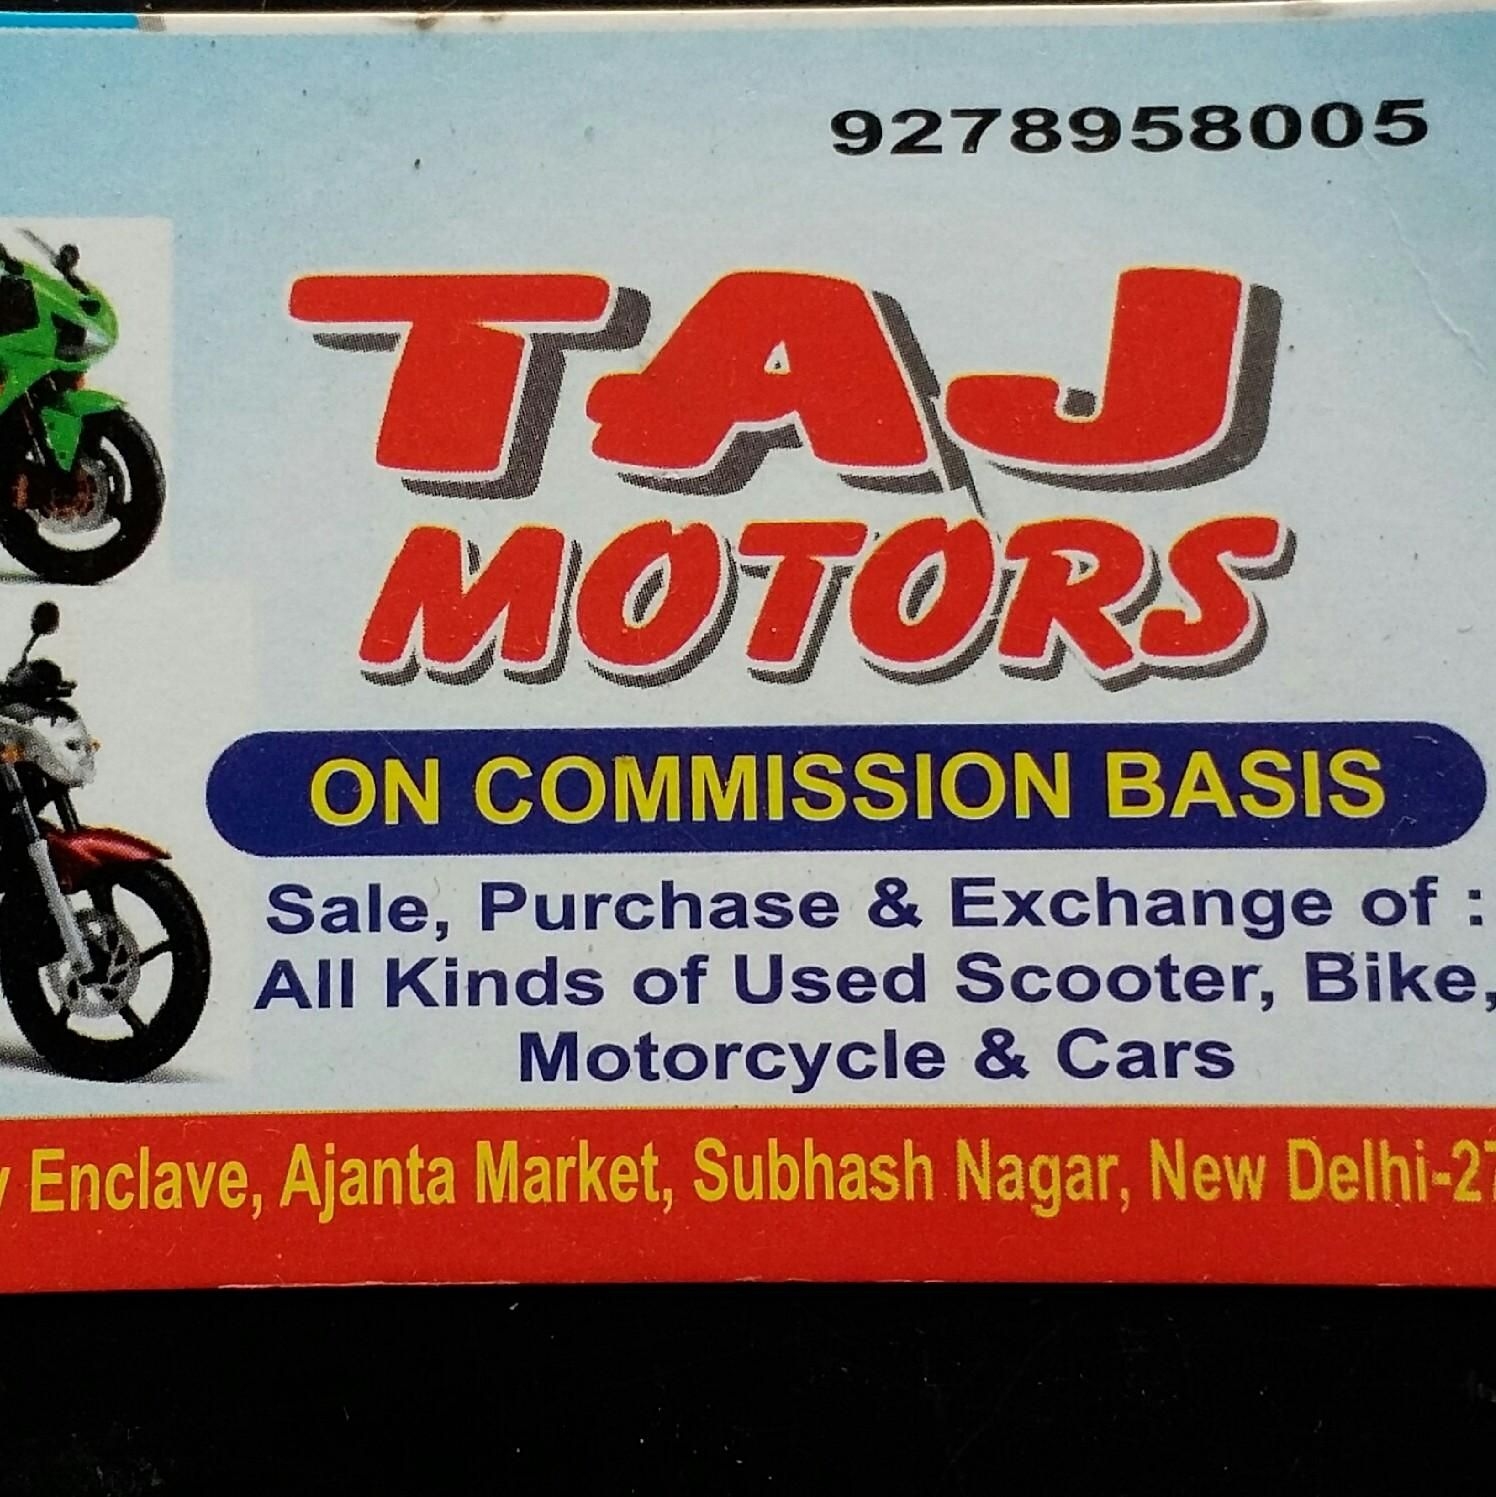 Taj Motors